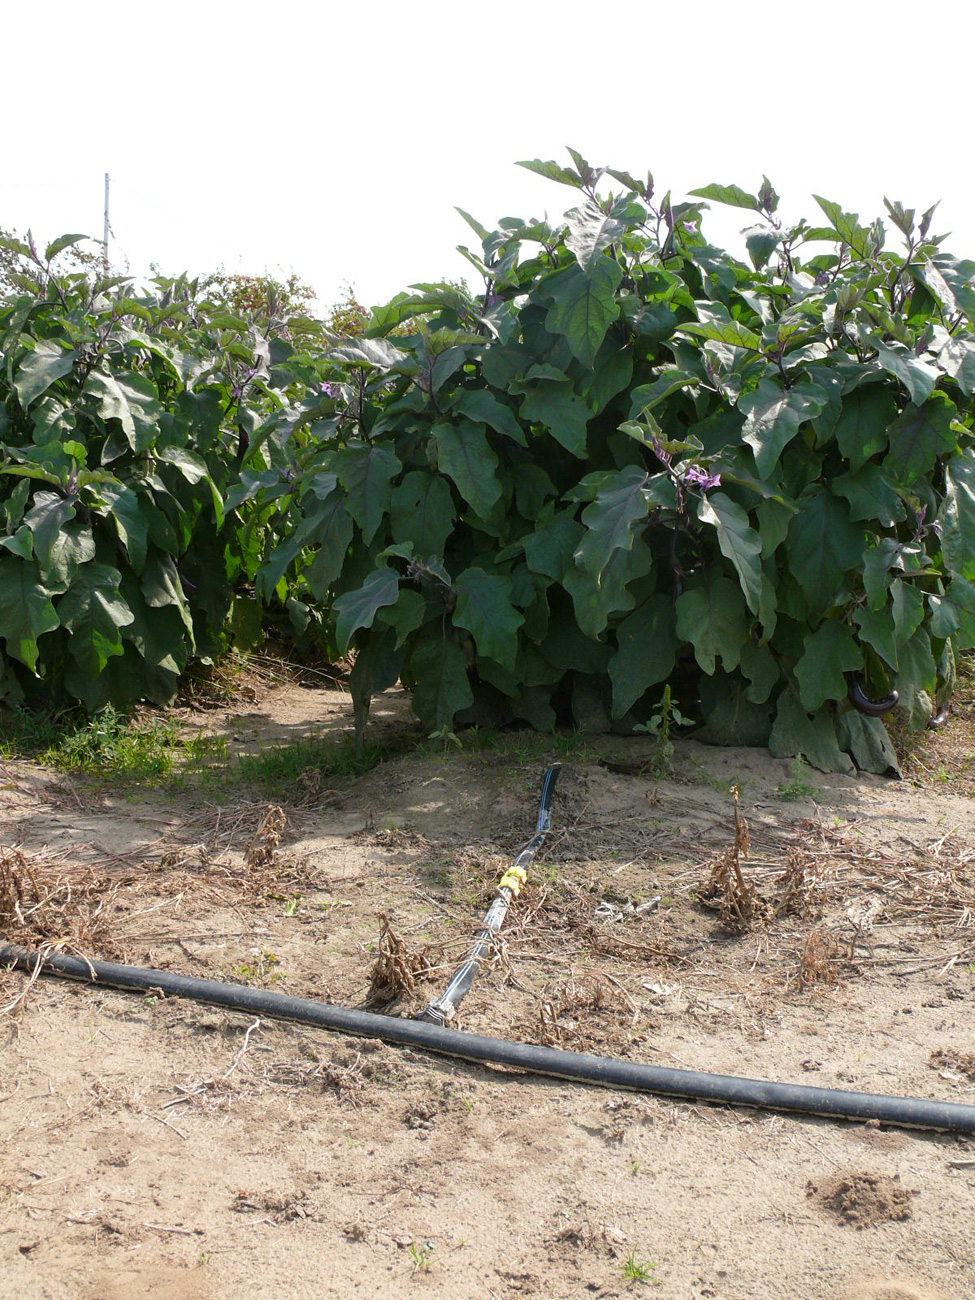 Photo d’un tuyau collecteur qui alimente une gaine d’irrigation perforée déposée sur la surface du sol et servant à irriguer une rangée de plants d’aubergines.